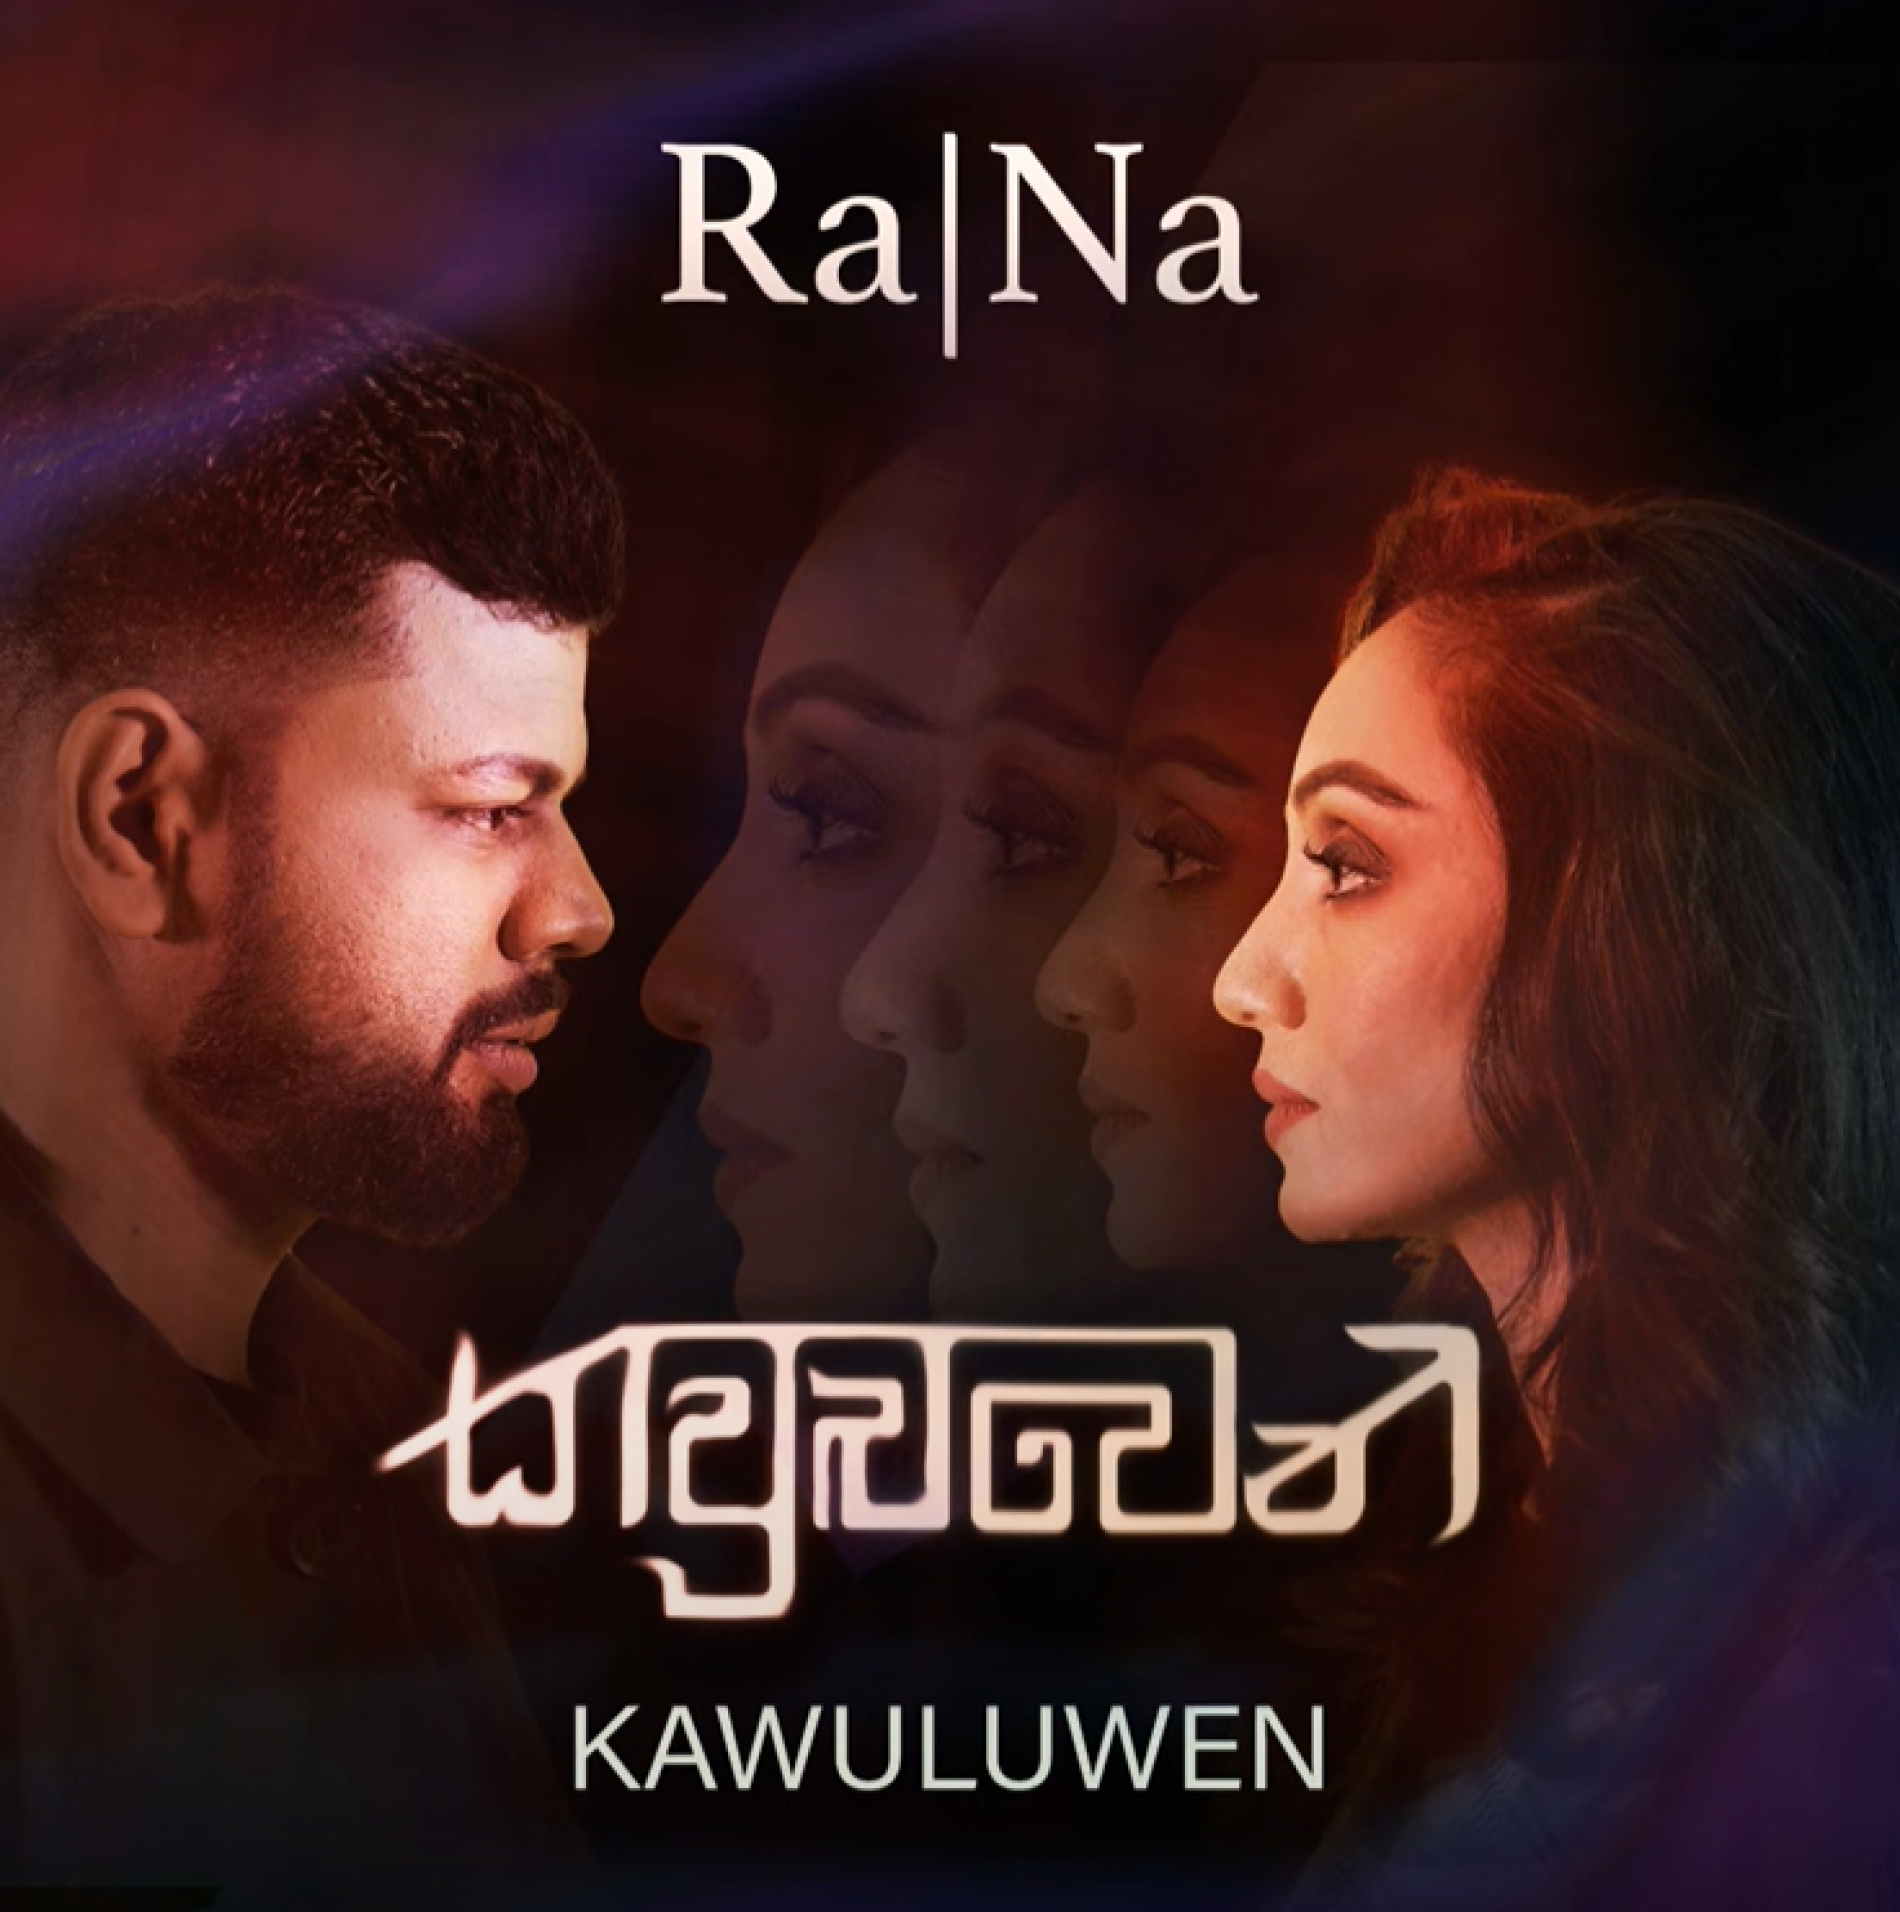 New Music : Ra|Na- Kawuluwen